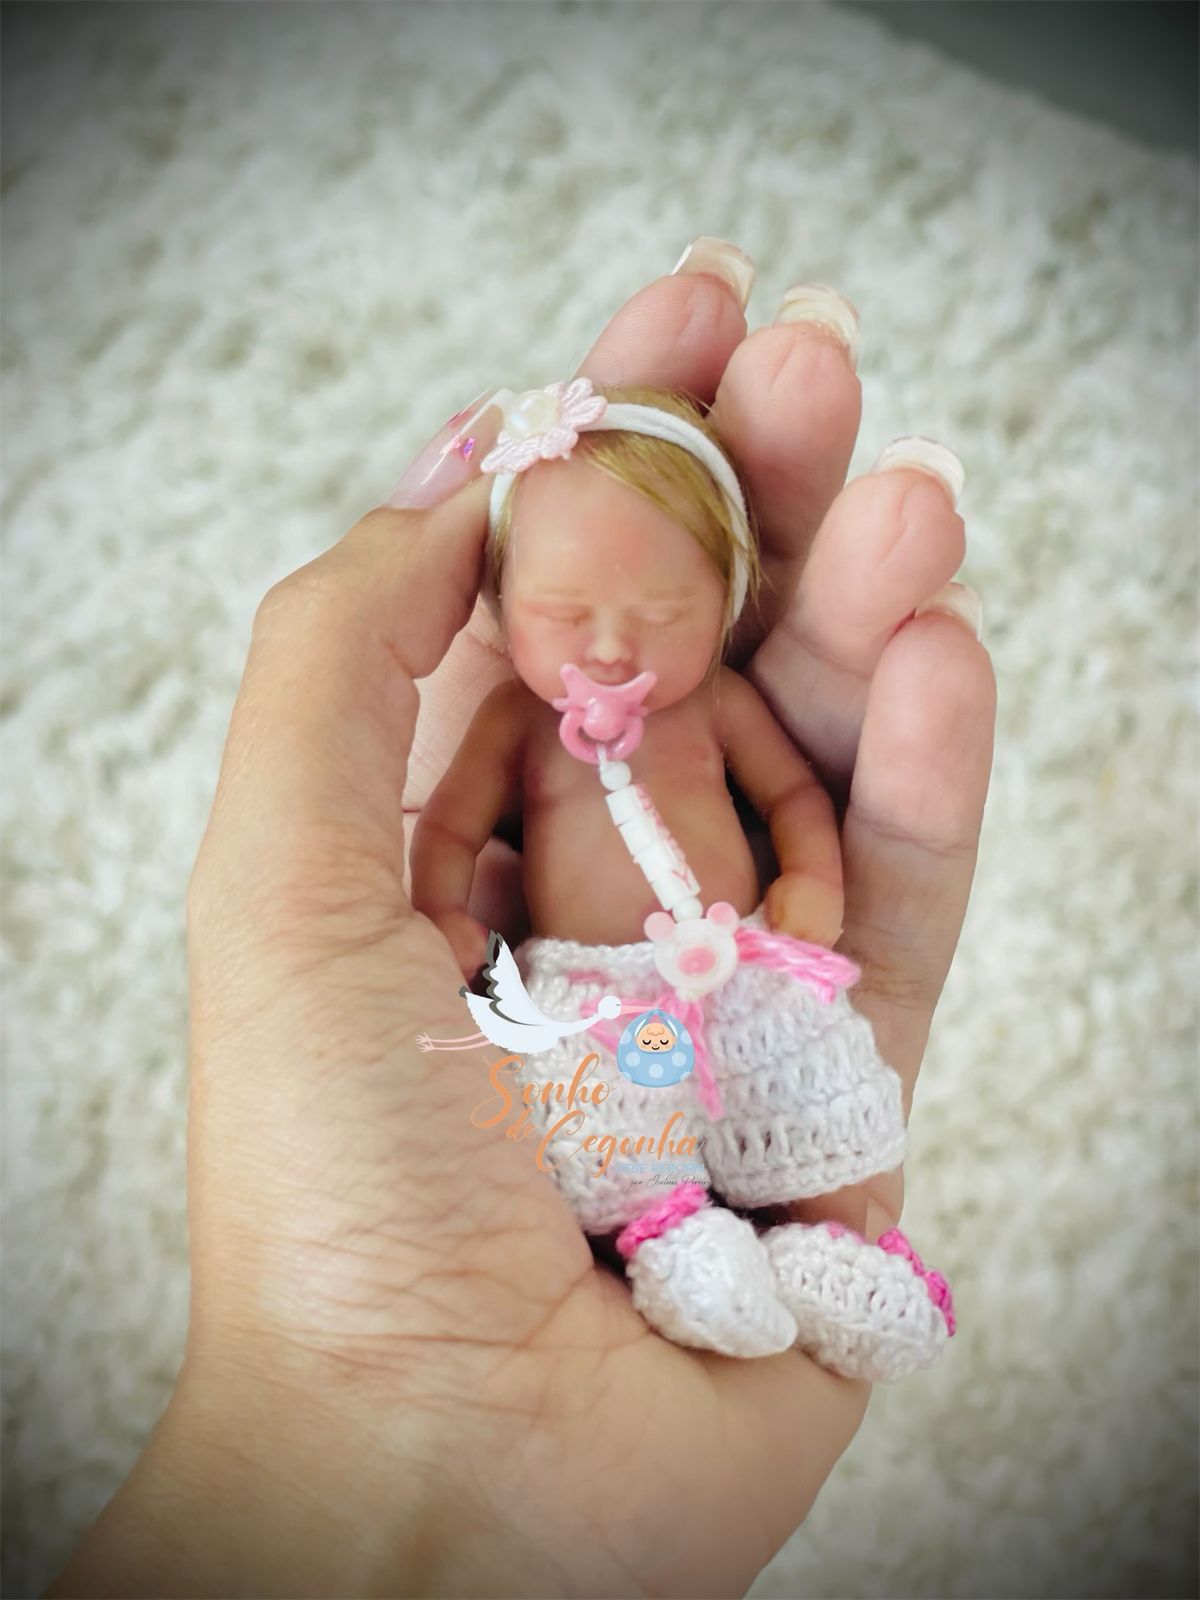 Bebê Reborn Silicone Sólido Mini Bebê